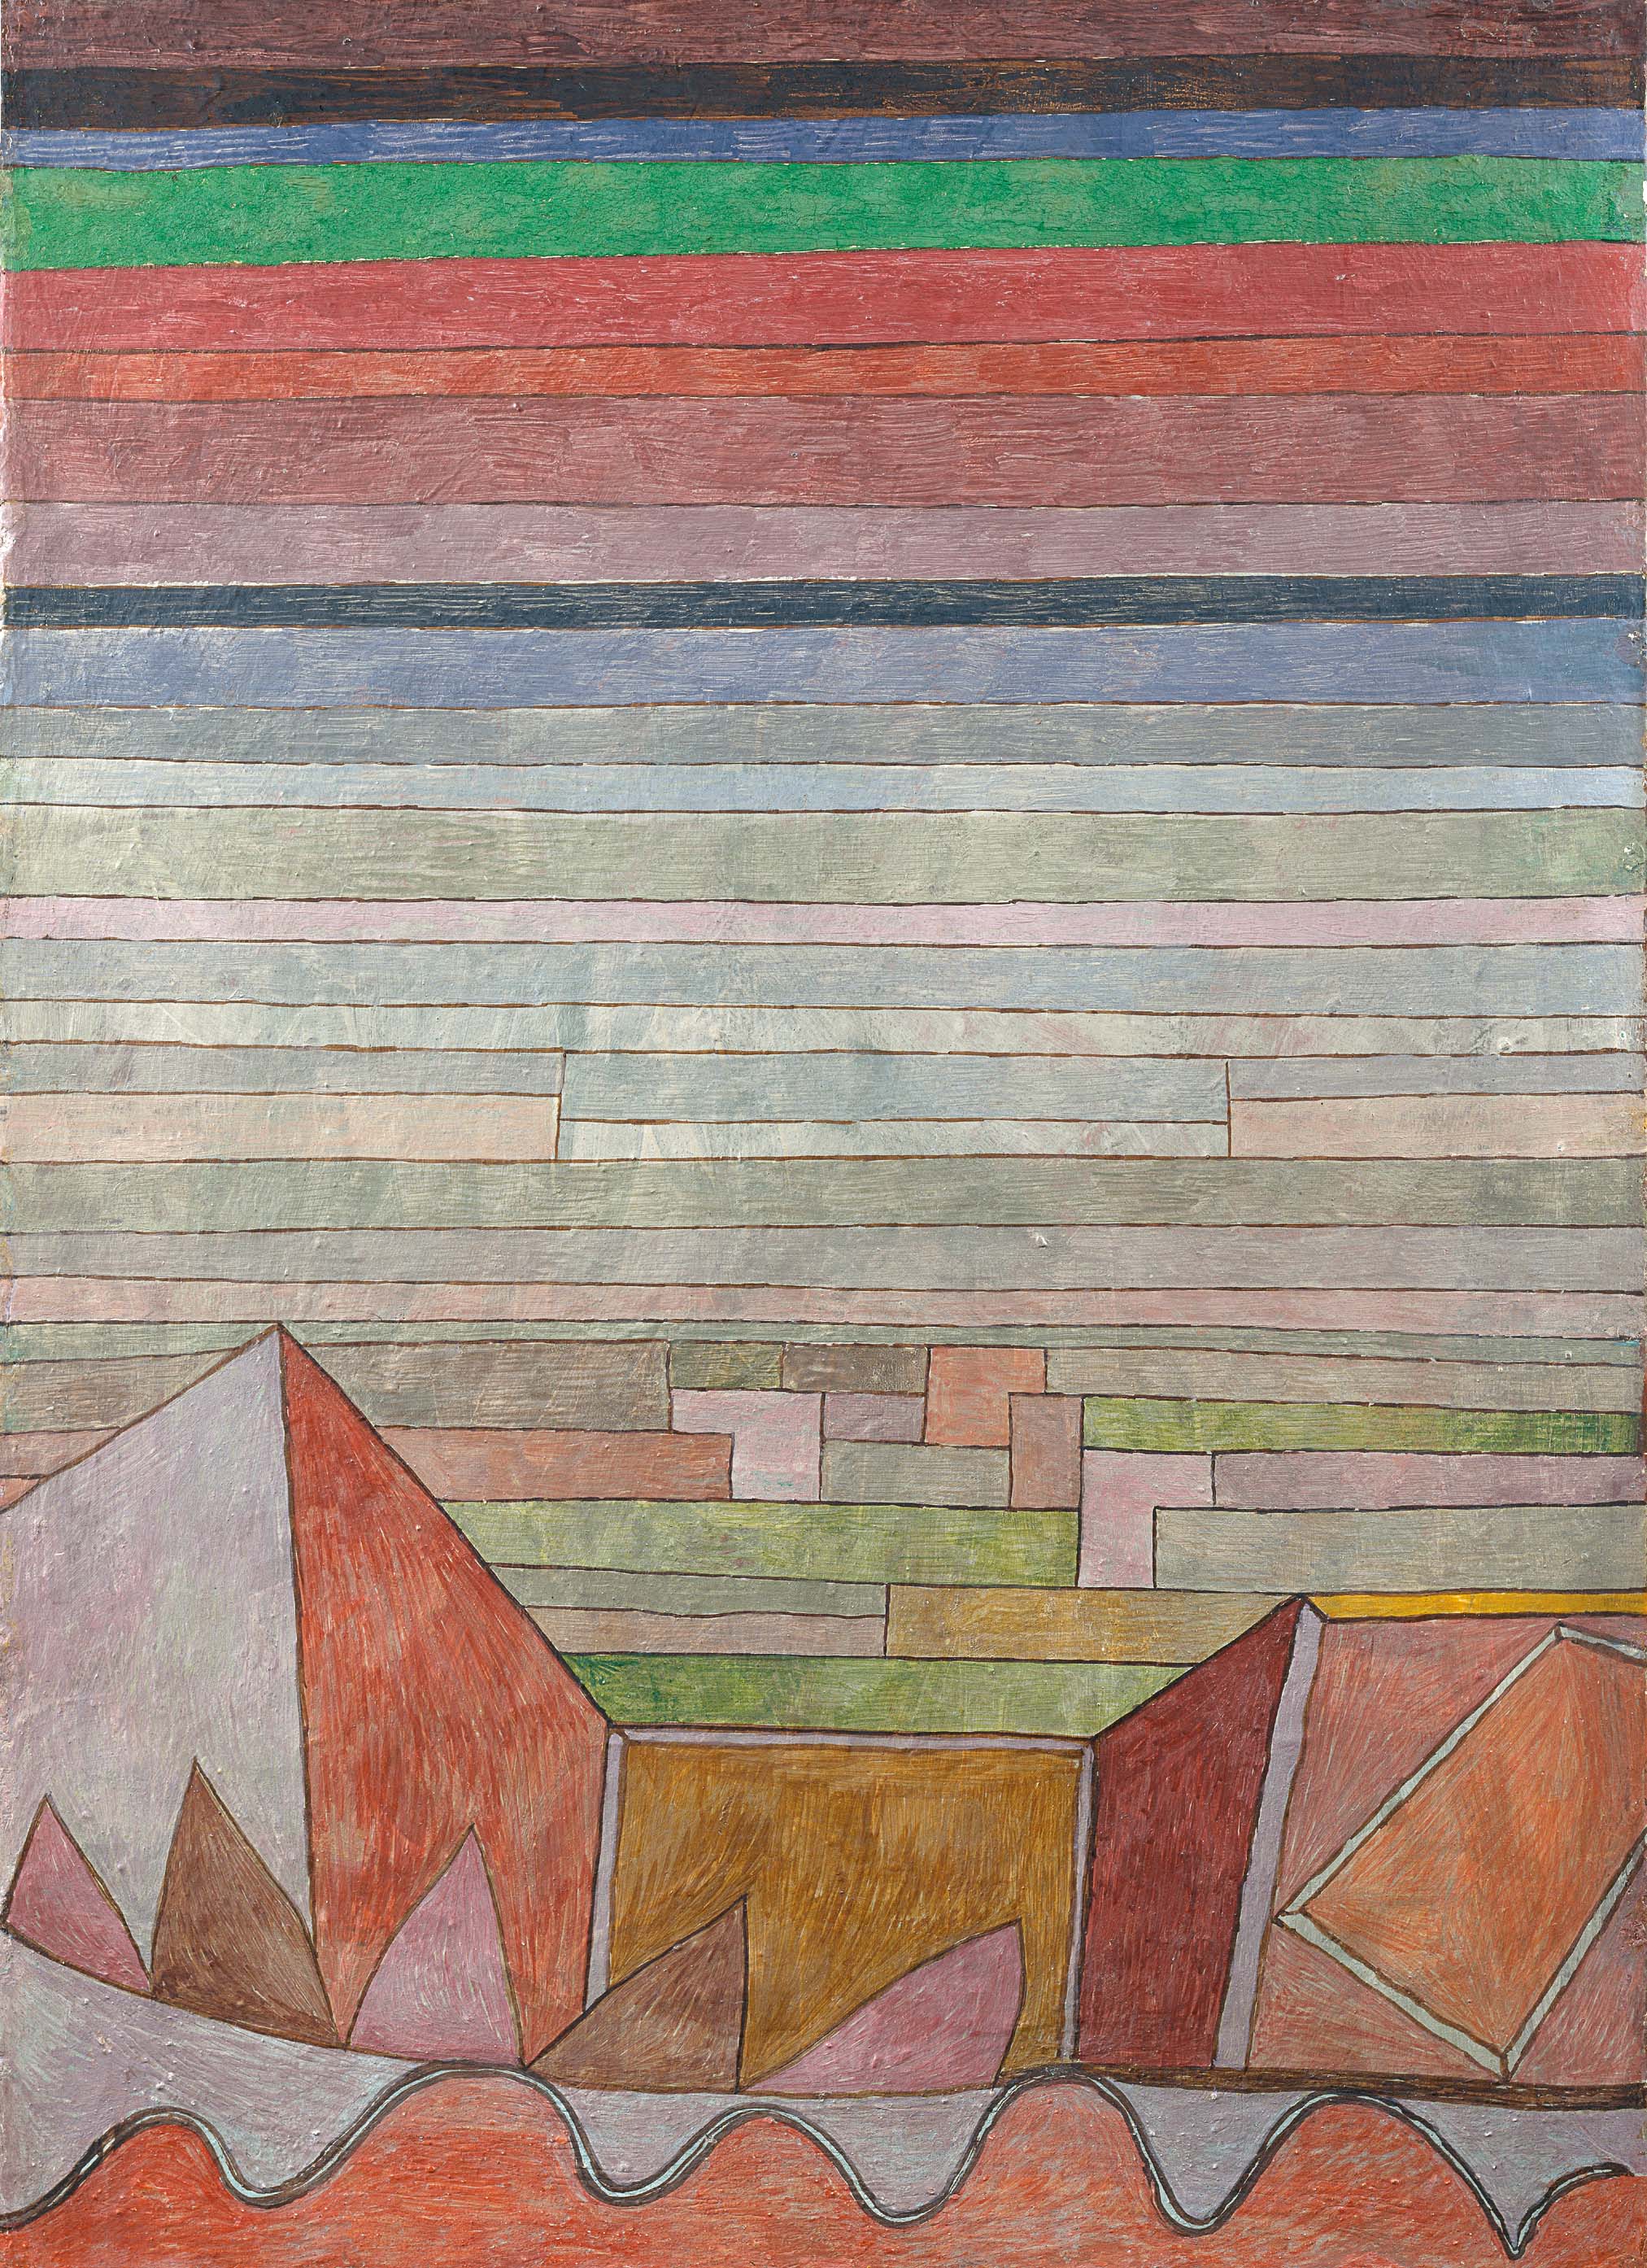 Vista del país fértil by Paul Klee - 1932 - 48,5 x 34,5 cm Museo Städel